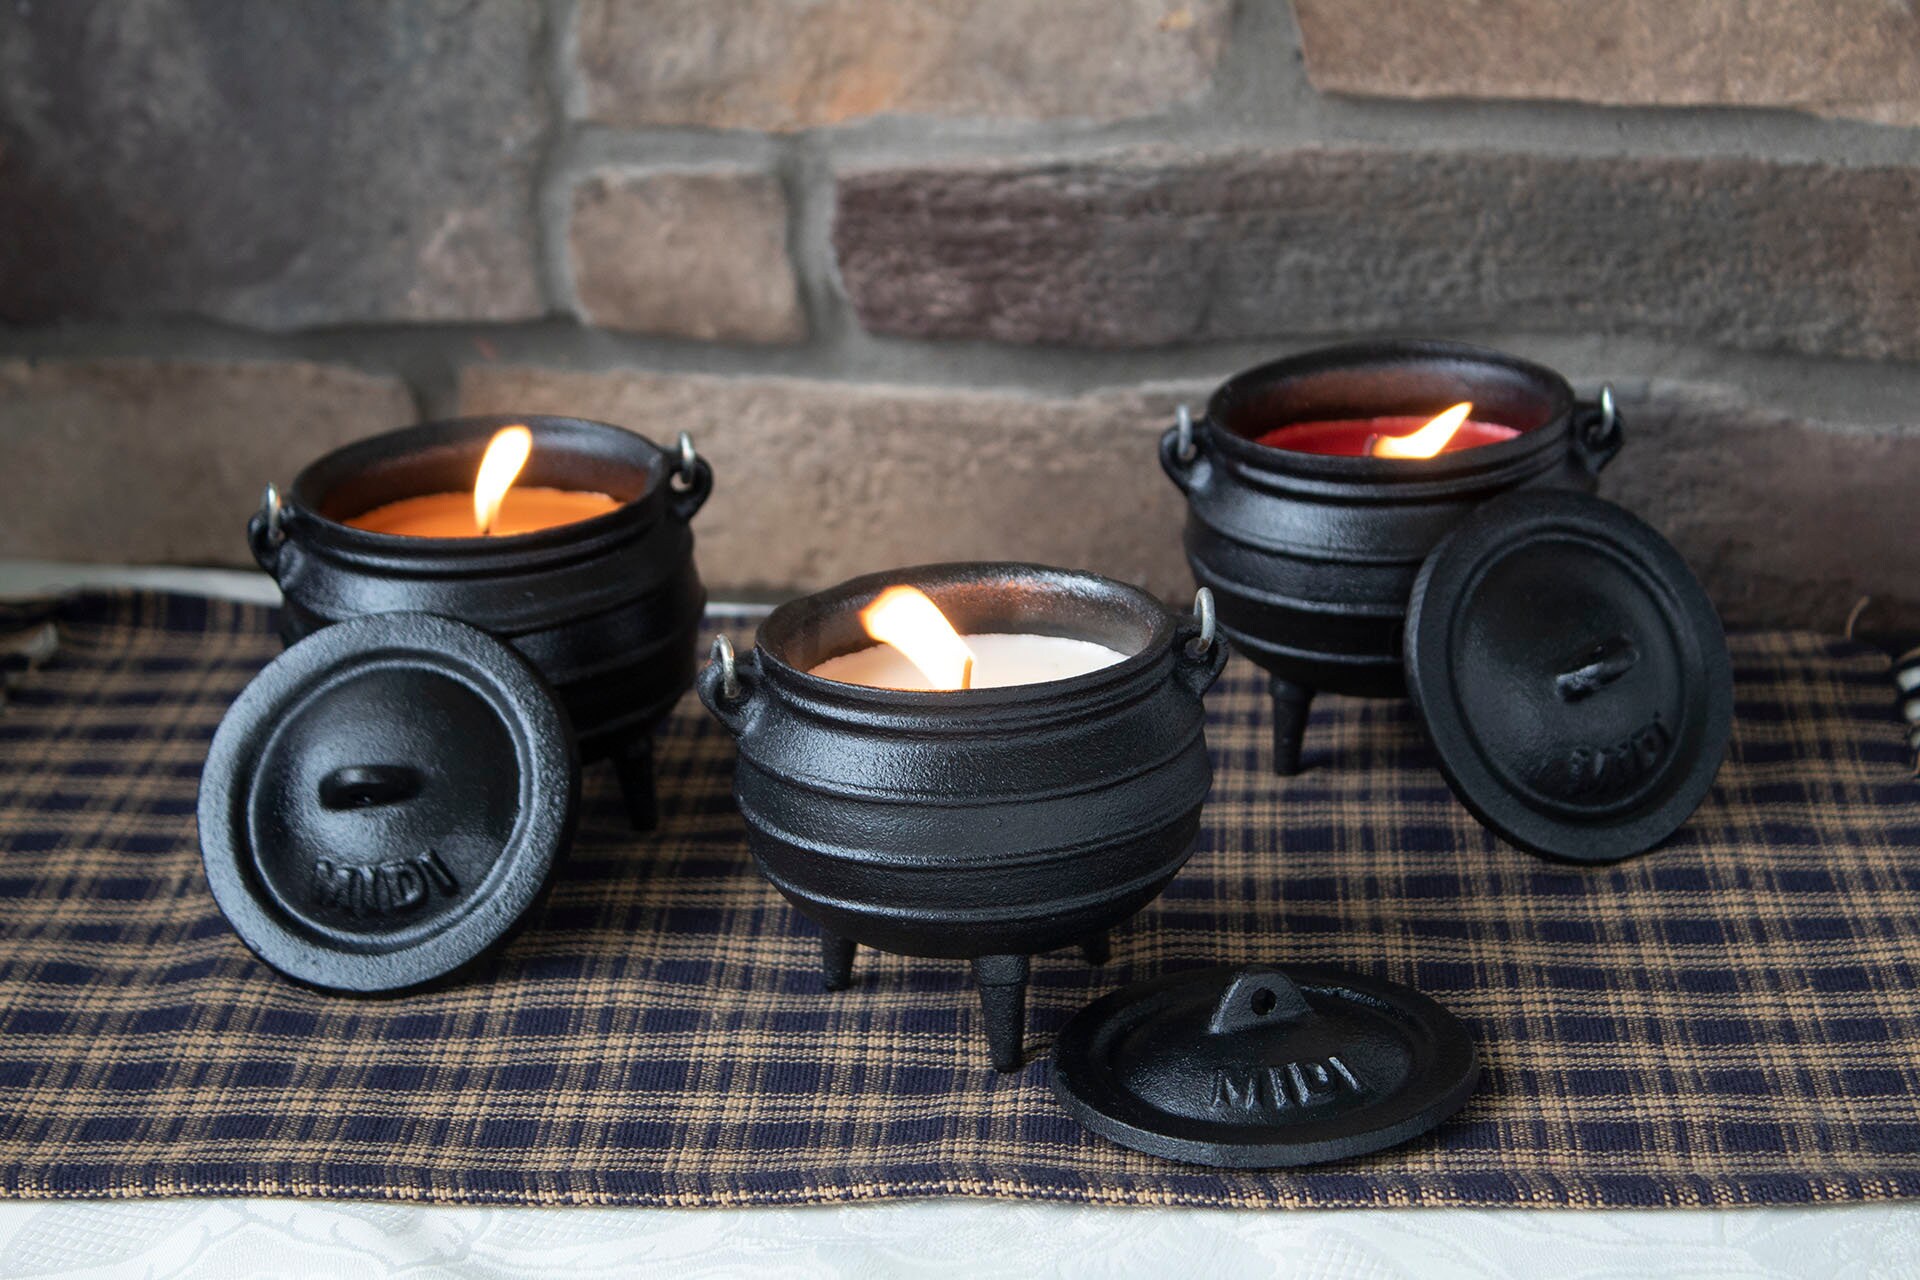 Size 8 Potjie Pot Cauldron Cast Iron Festivals – Annie's Collections